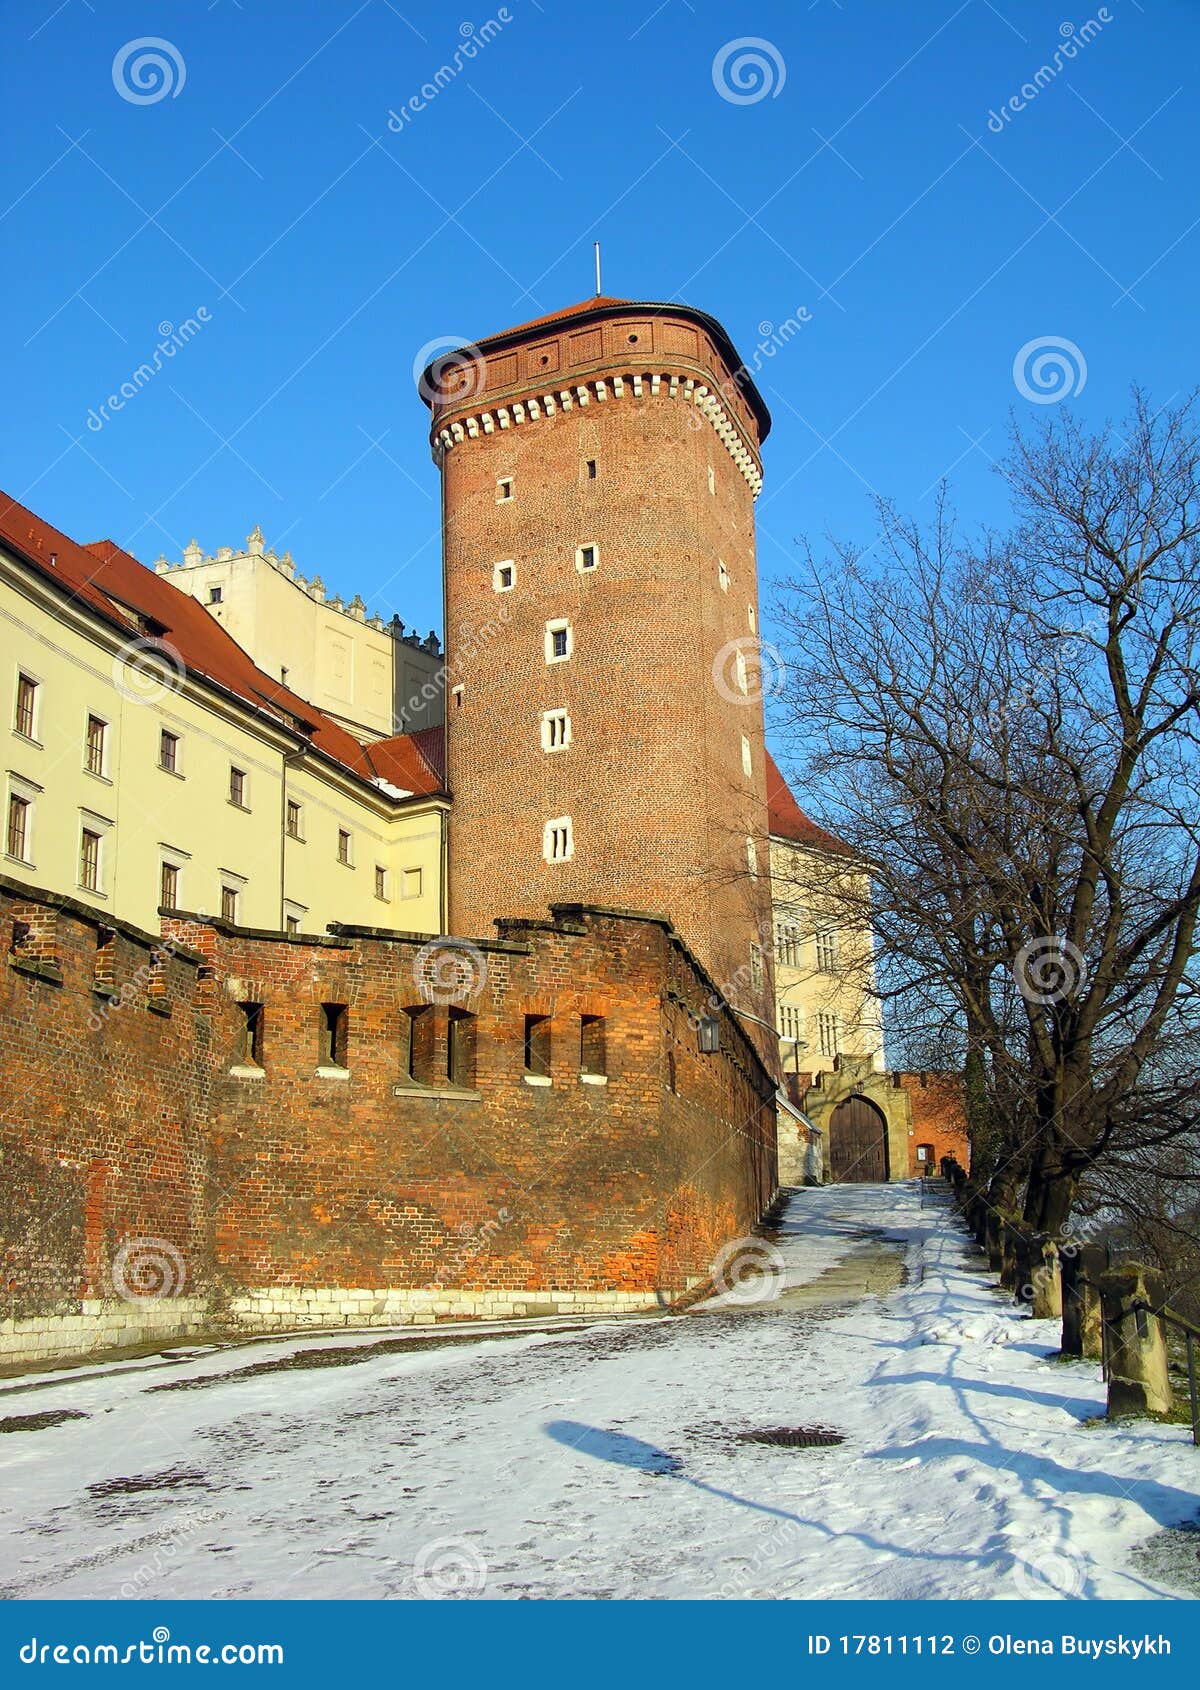 wawel castle in krakow, poland